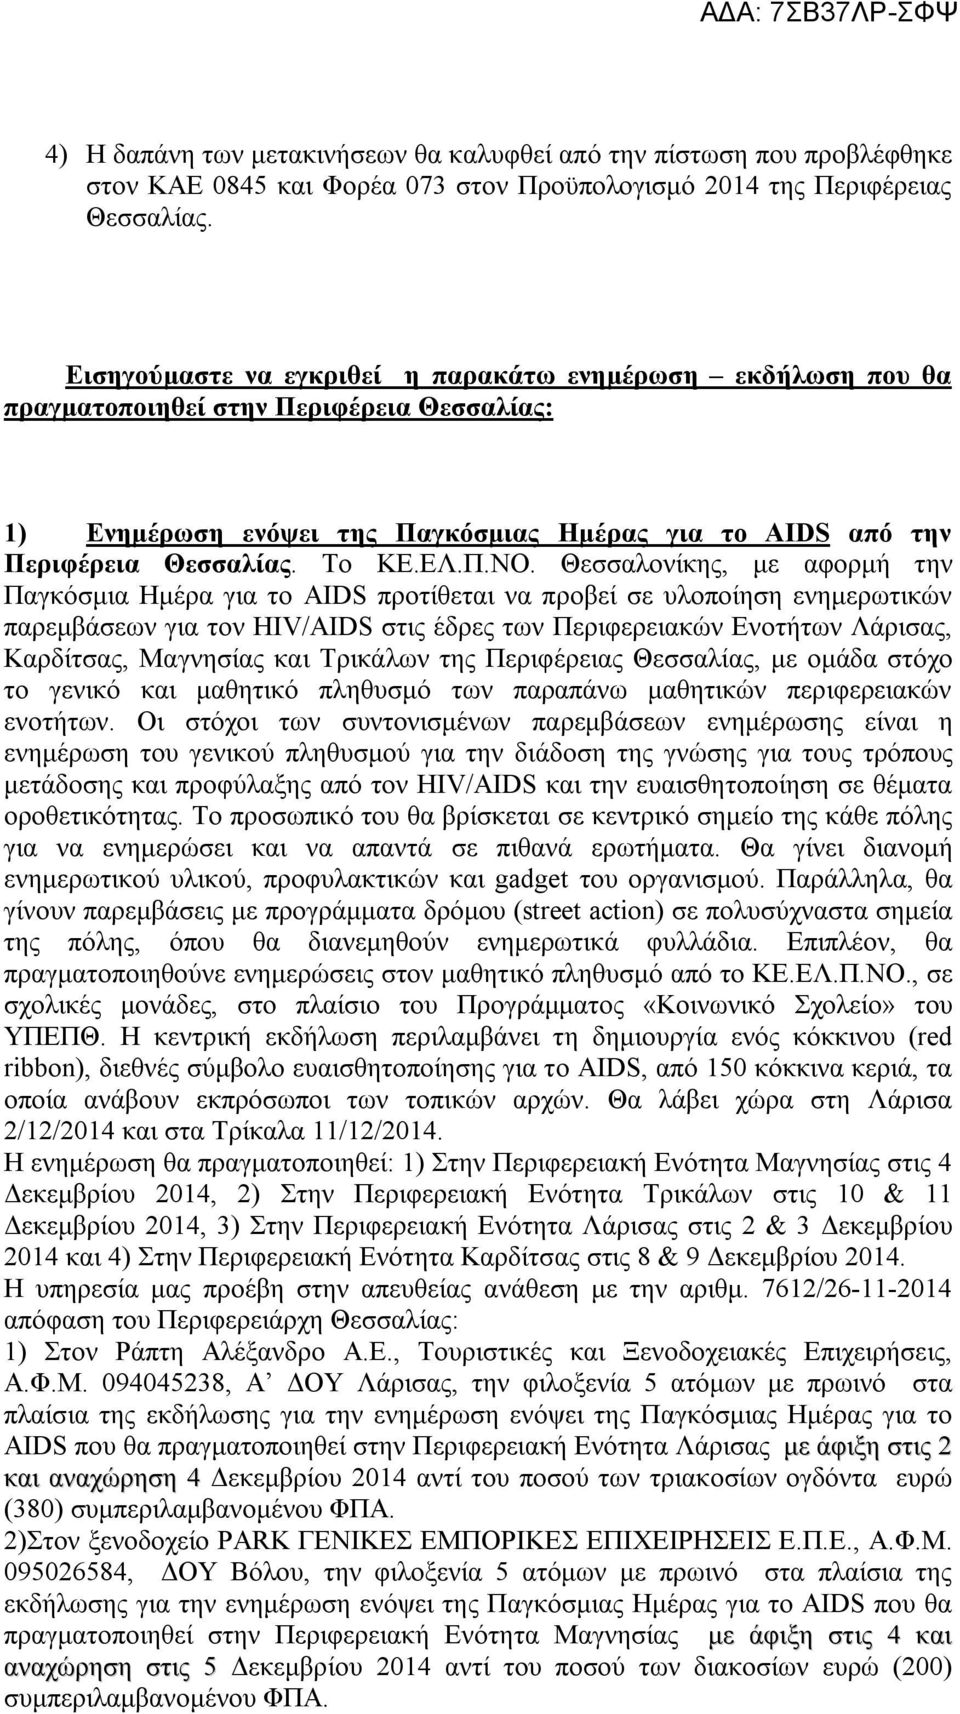 Θεσσαλονίκης, με αφορμή την Παγκόσμια Ημέρα για το AIDS προτίθεται να προβεί σε υλοποίηση ενημερωτικών παρεμβάσεων για τον HIV/AIDS στις έδρες των Περιφερειακών Ενοτήτων Λάρισας, Καρδίτσας, Μαγνησίας